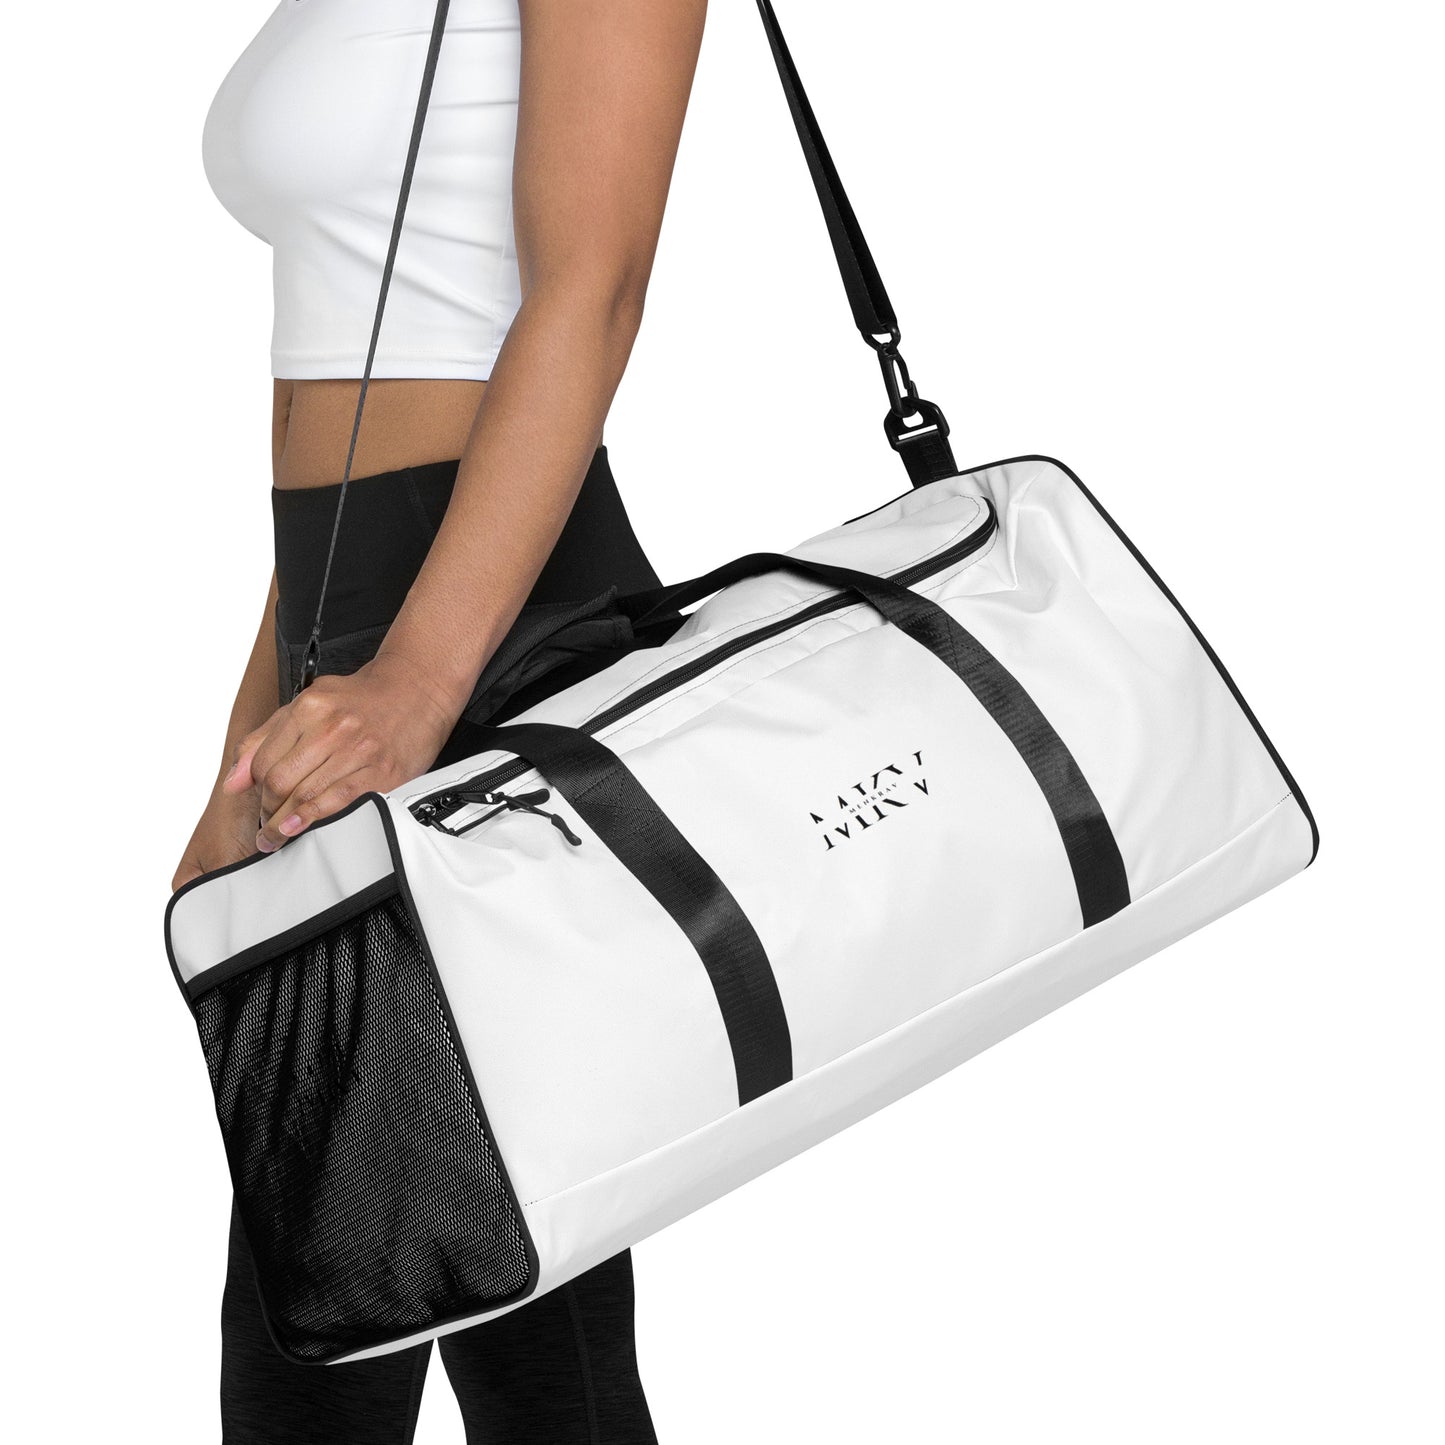 Menkrav Initiate white sports bag